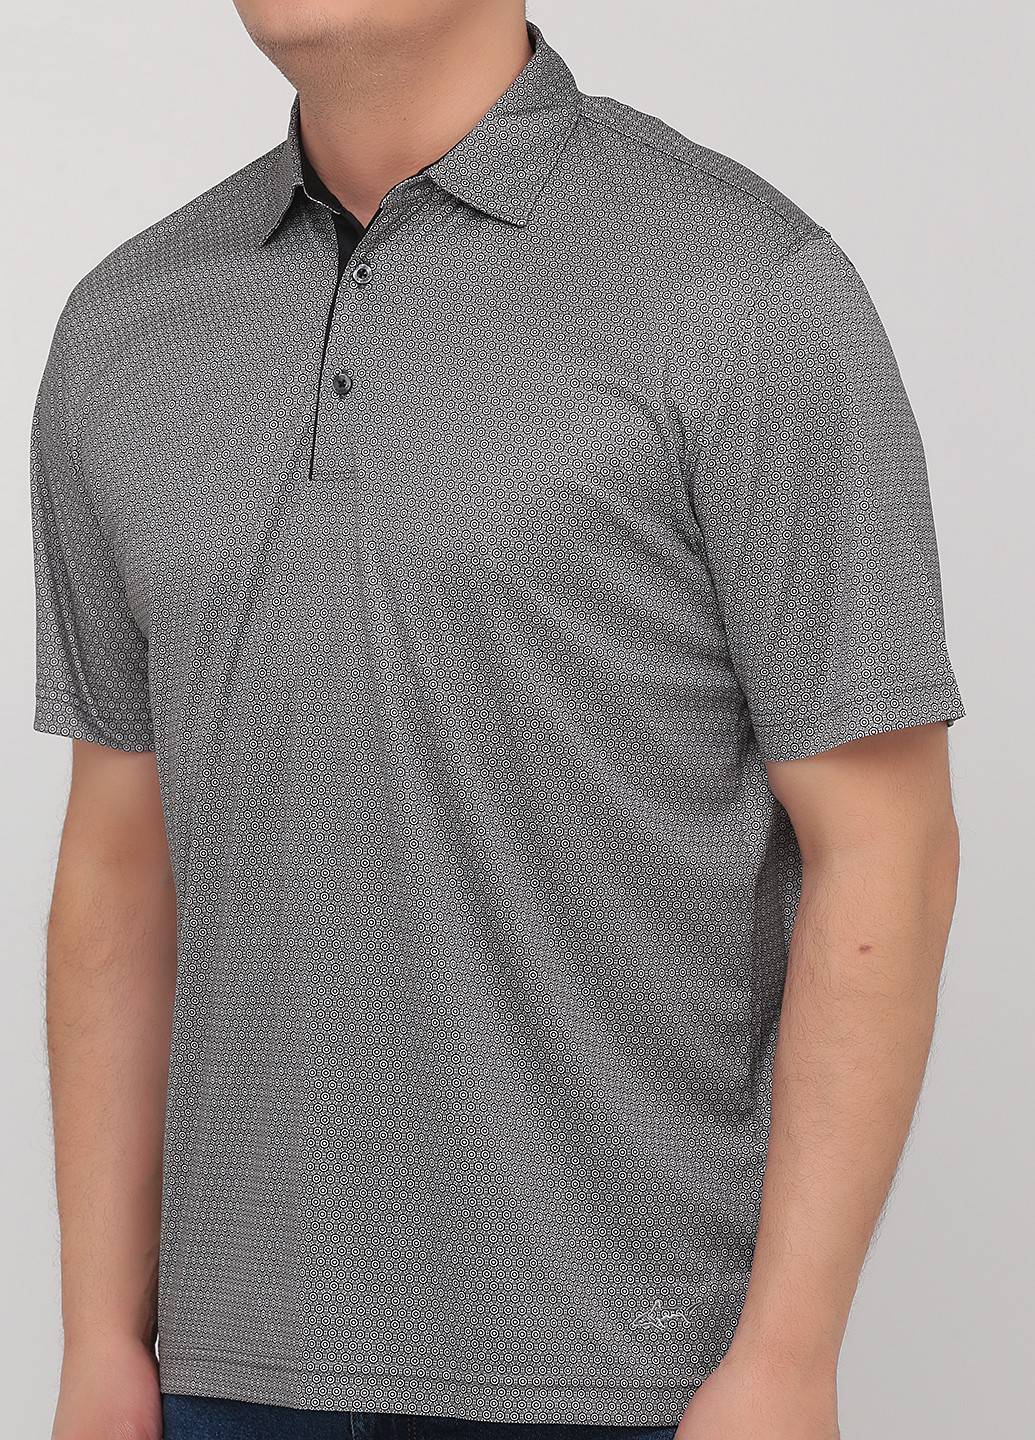 Черная футболка-поло для мужчин Greg Norman с орнаментом